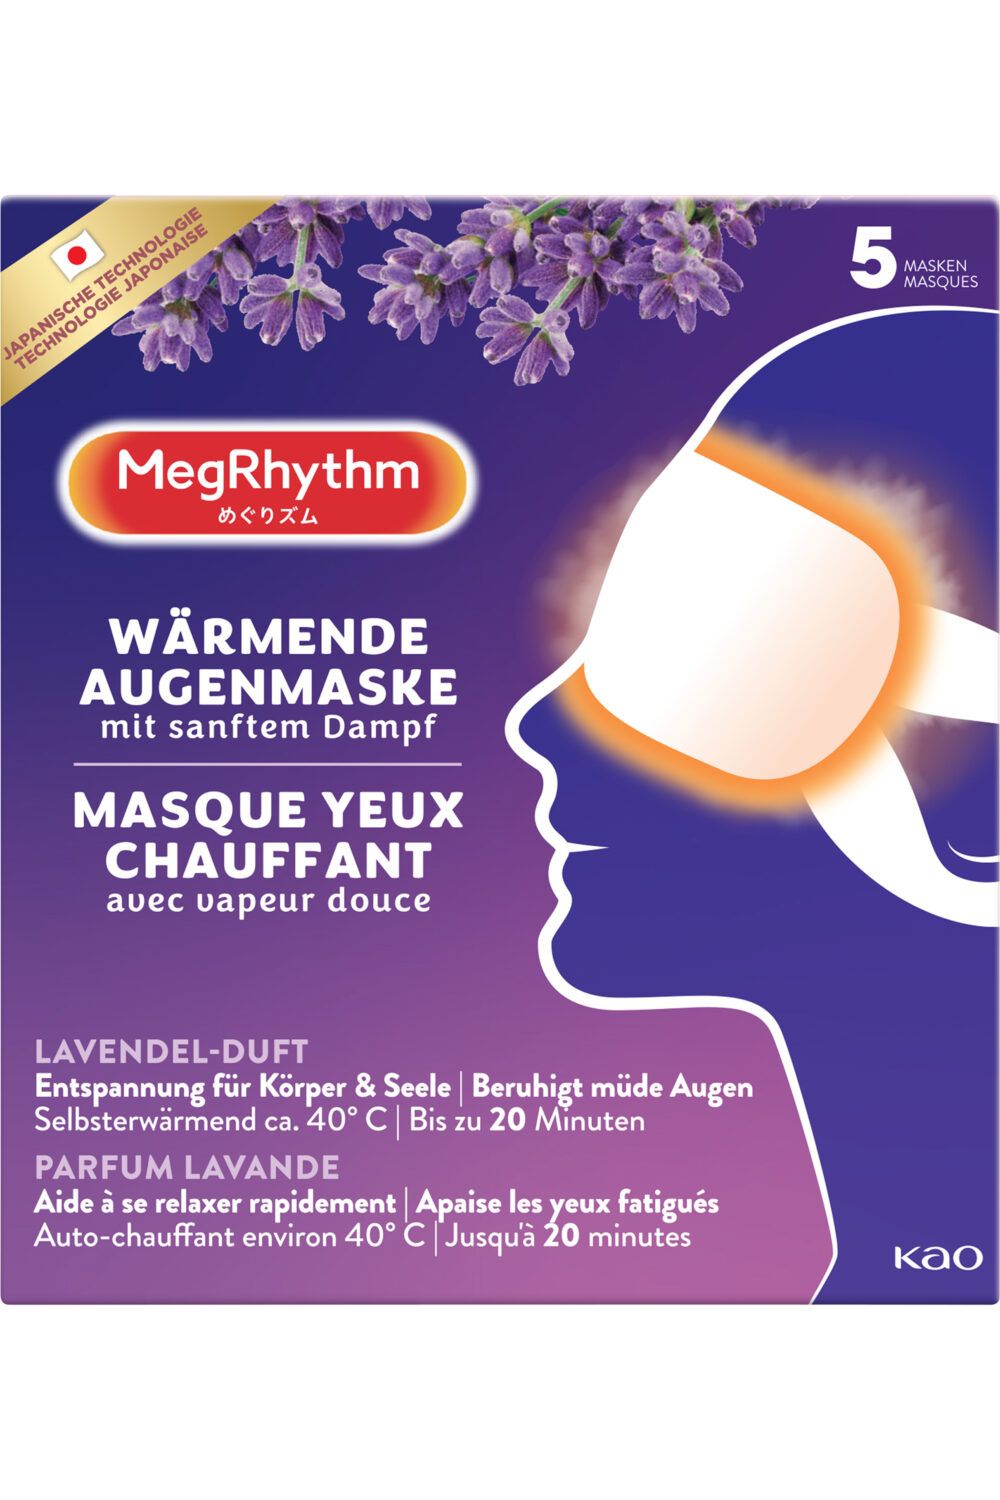 MegRhythm - Masque yeux chauffant parfum lavande 5 unités